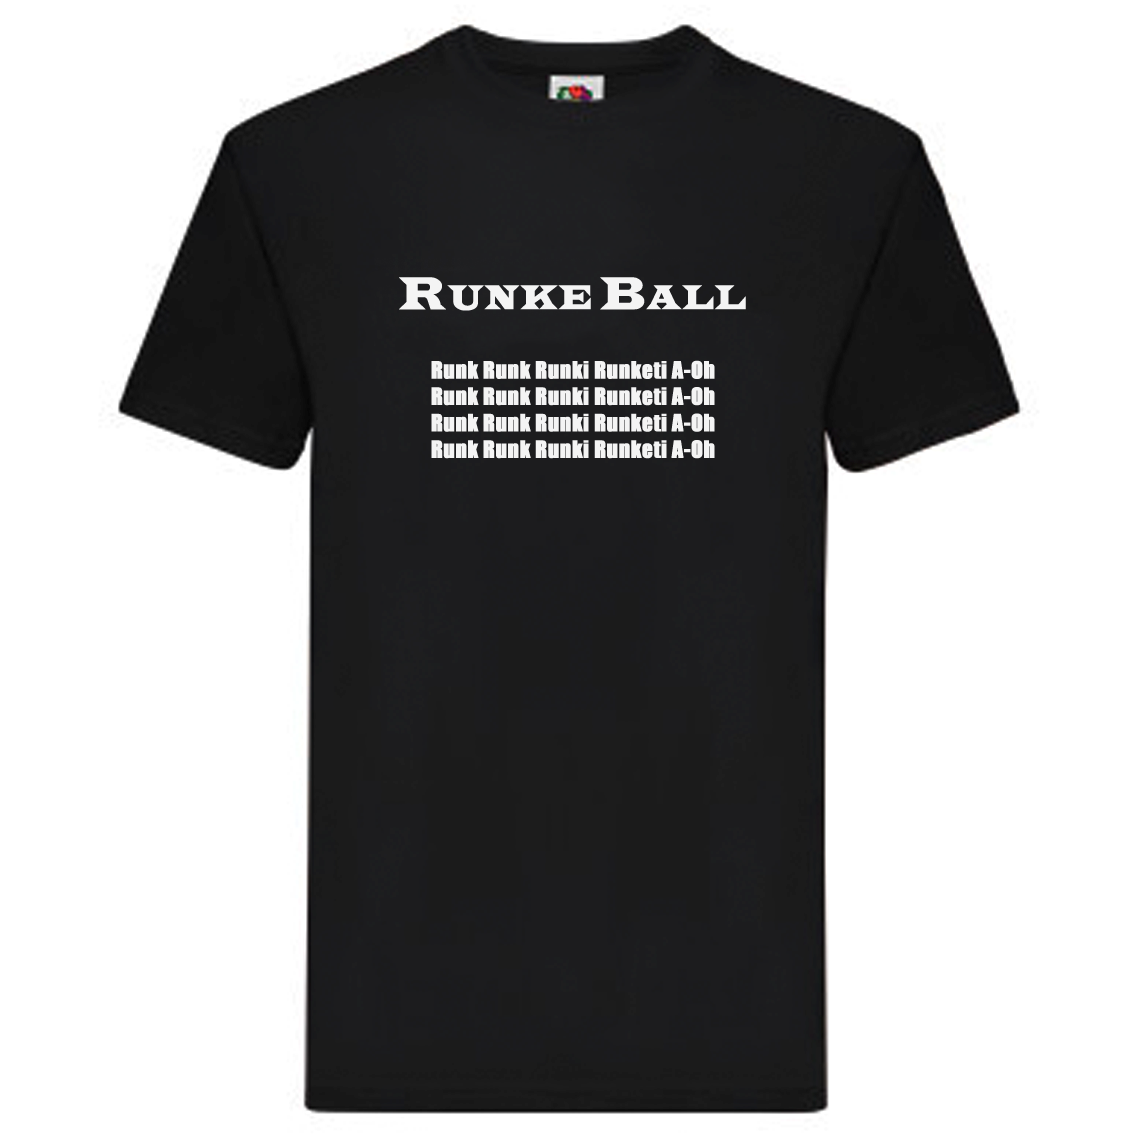 T-Shirt - Runke Ball - 1 T-Shirt